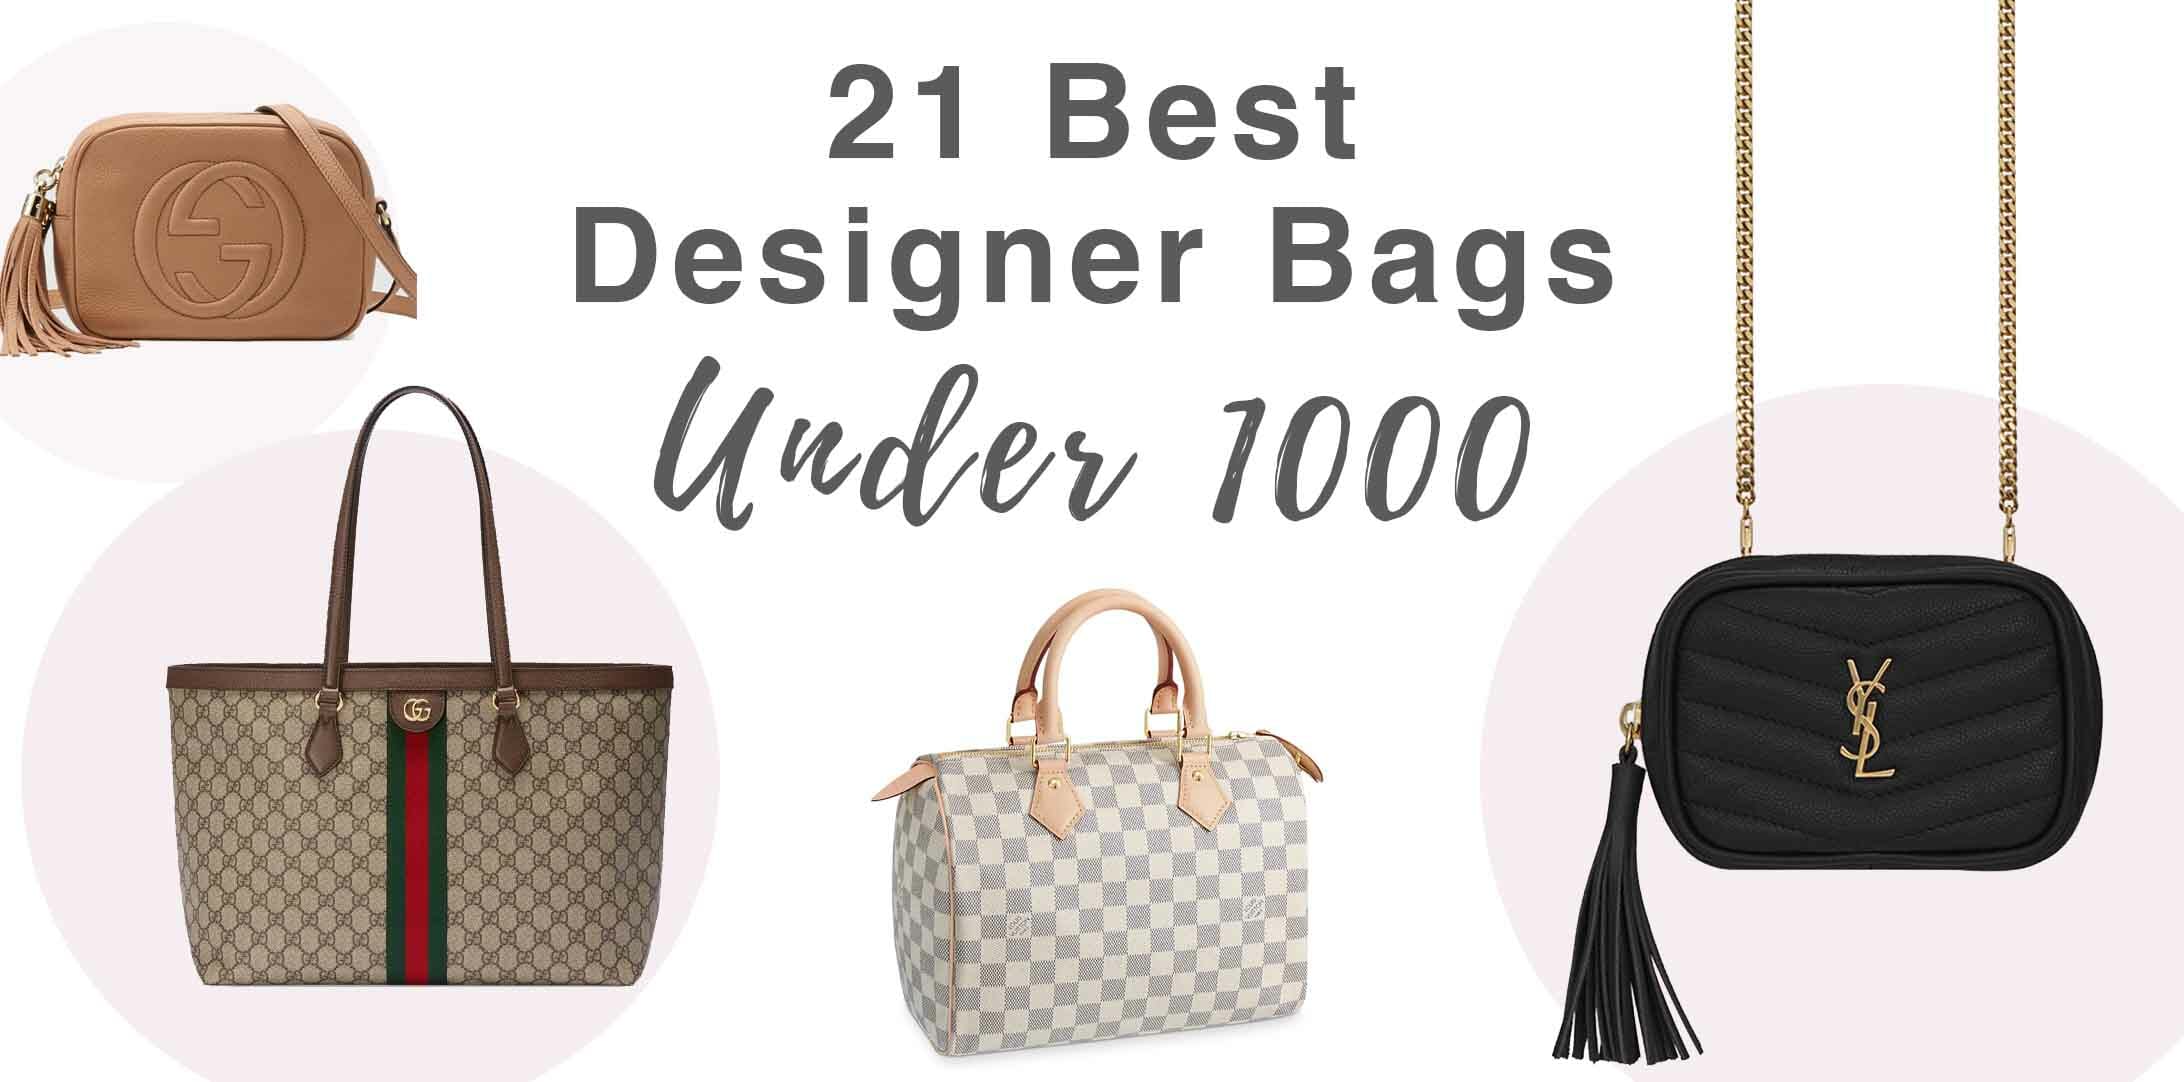 21 Best Designer Bags Under 1000 - Handbagholic